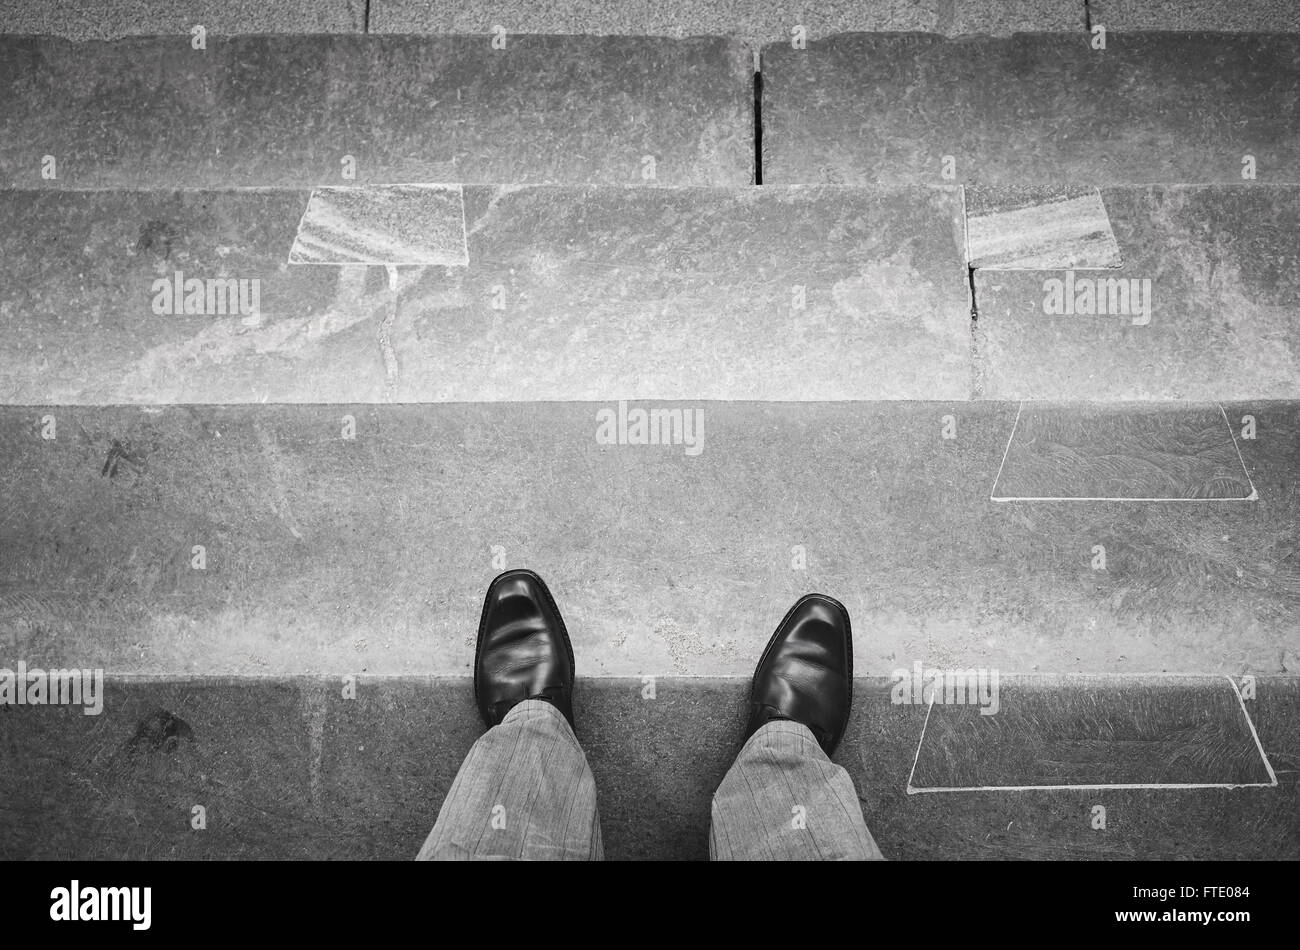 Urbanite man in black nuovi fulgidi scarpe di cuoio permanente sulla outdoor scale in pietra Foto Stock